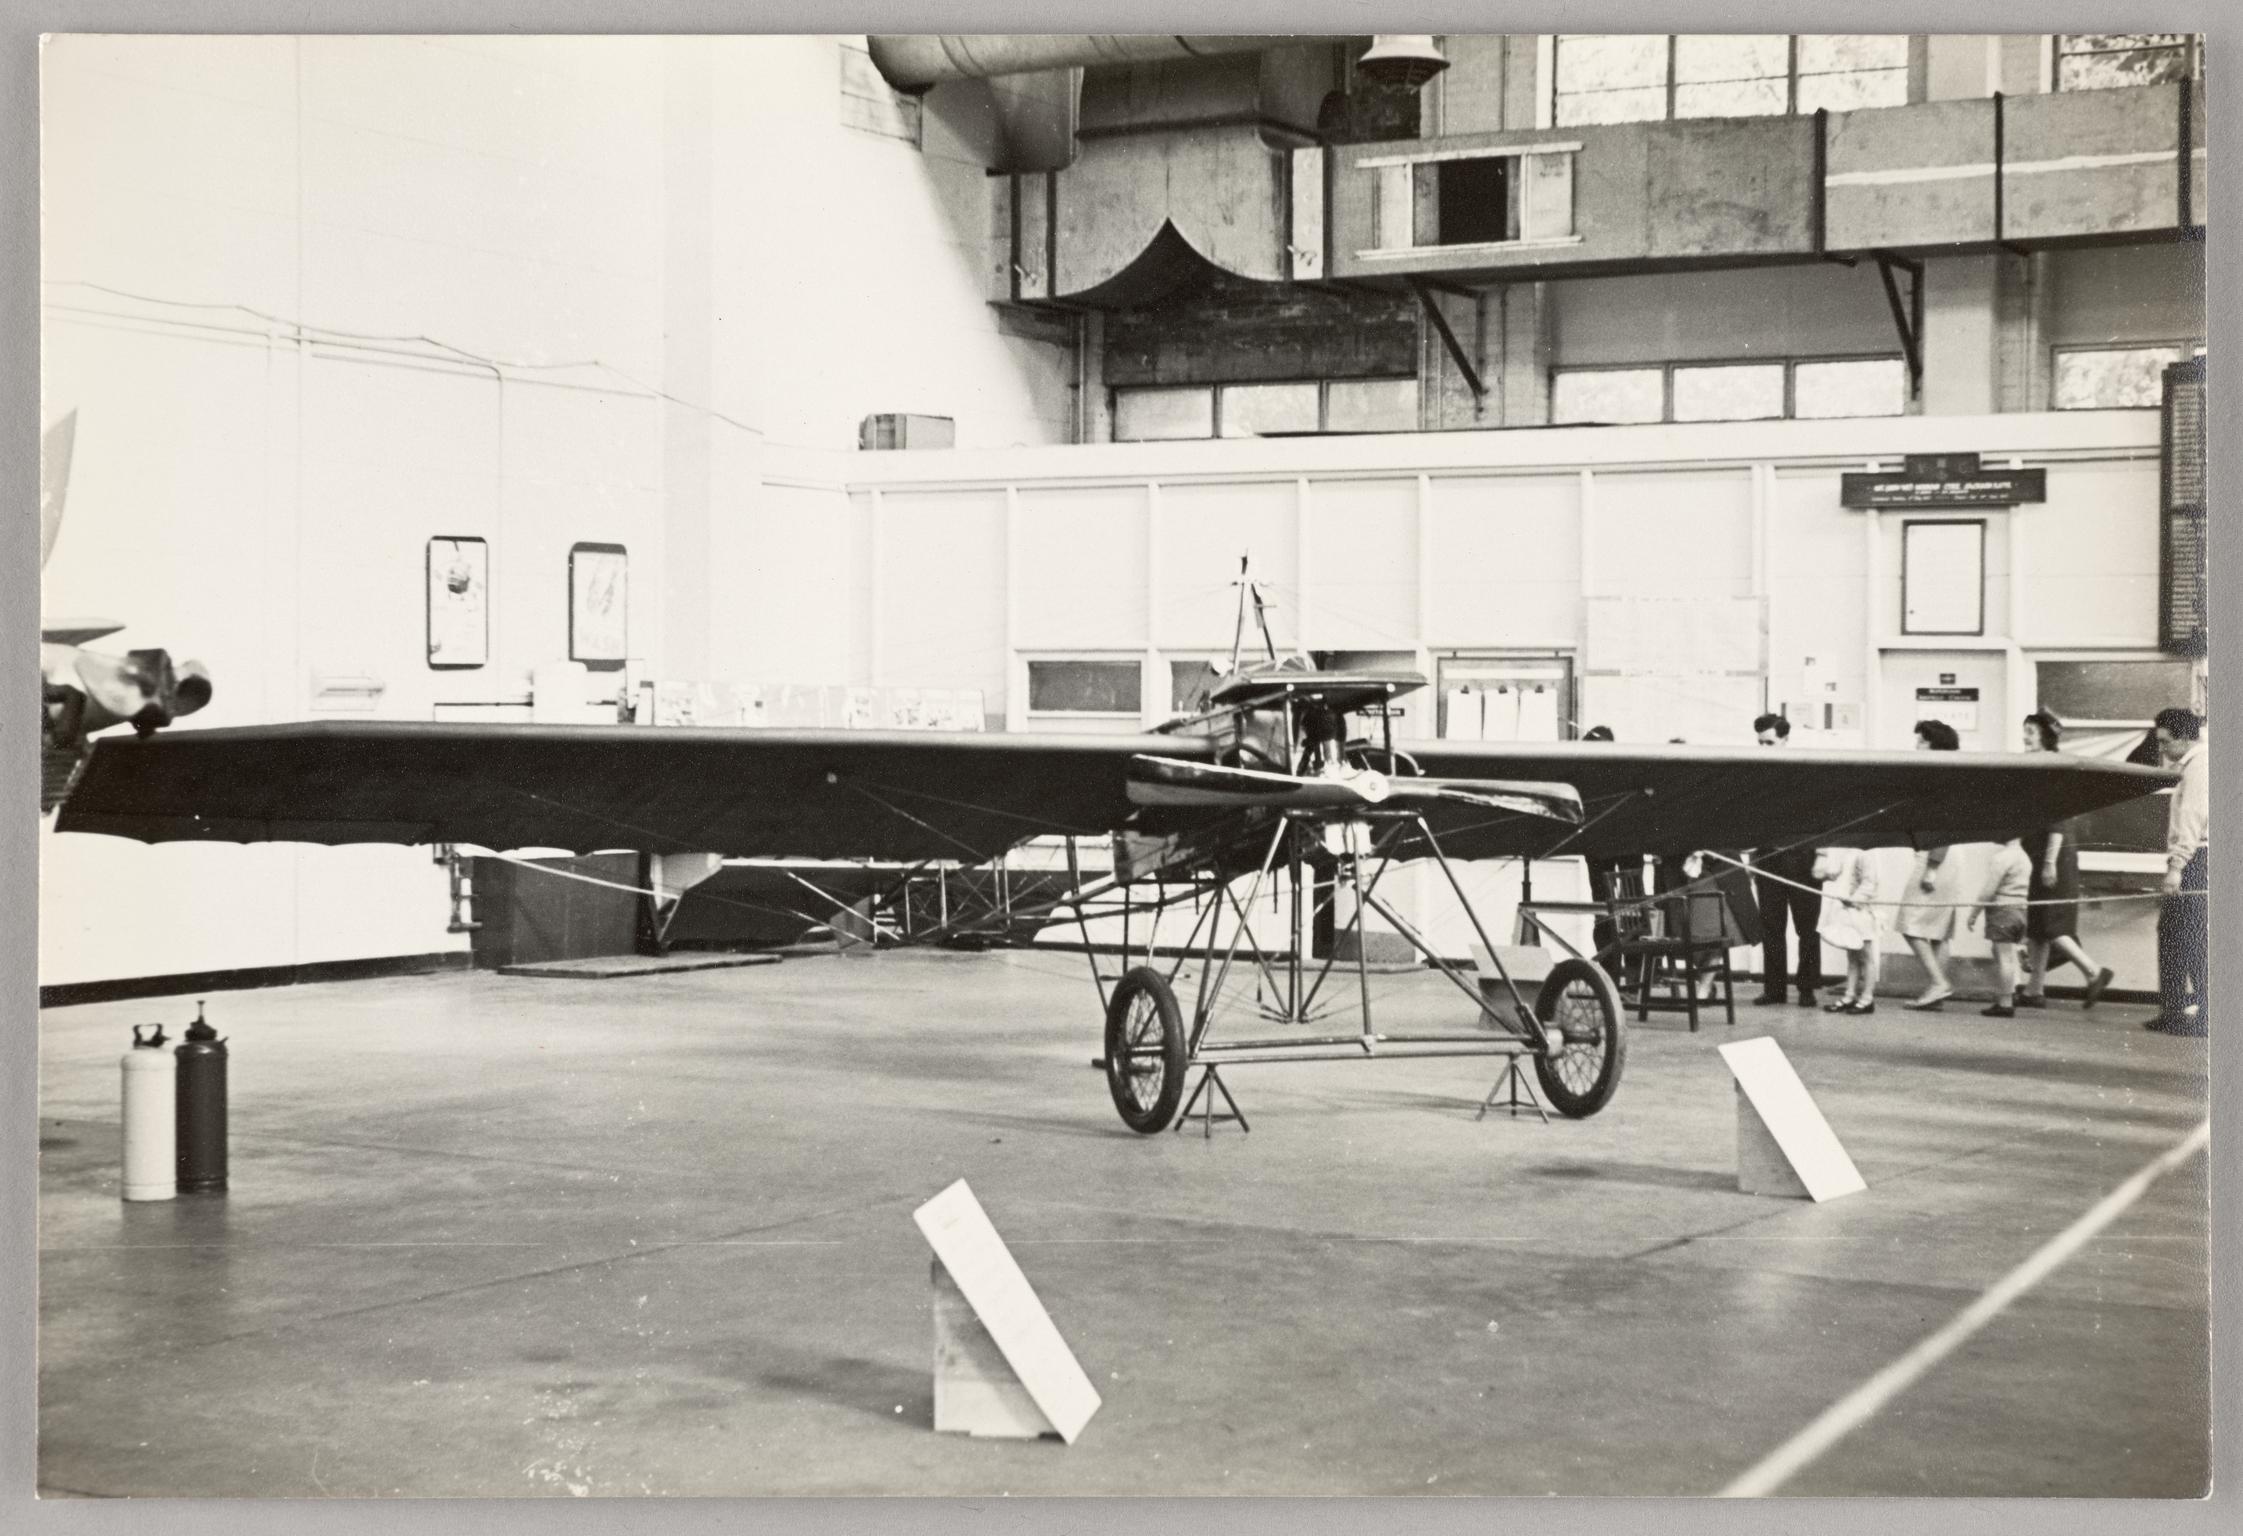 Watkins monoplane Robin Gôch, photograph